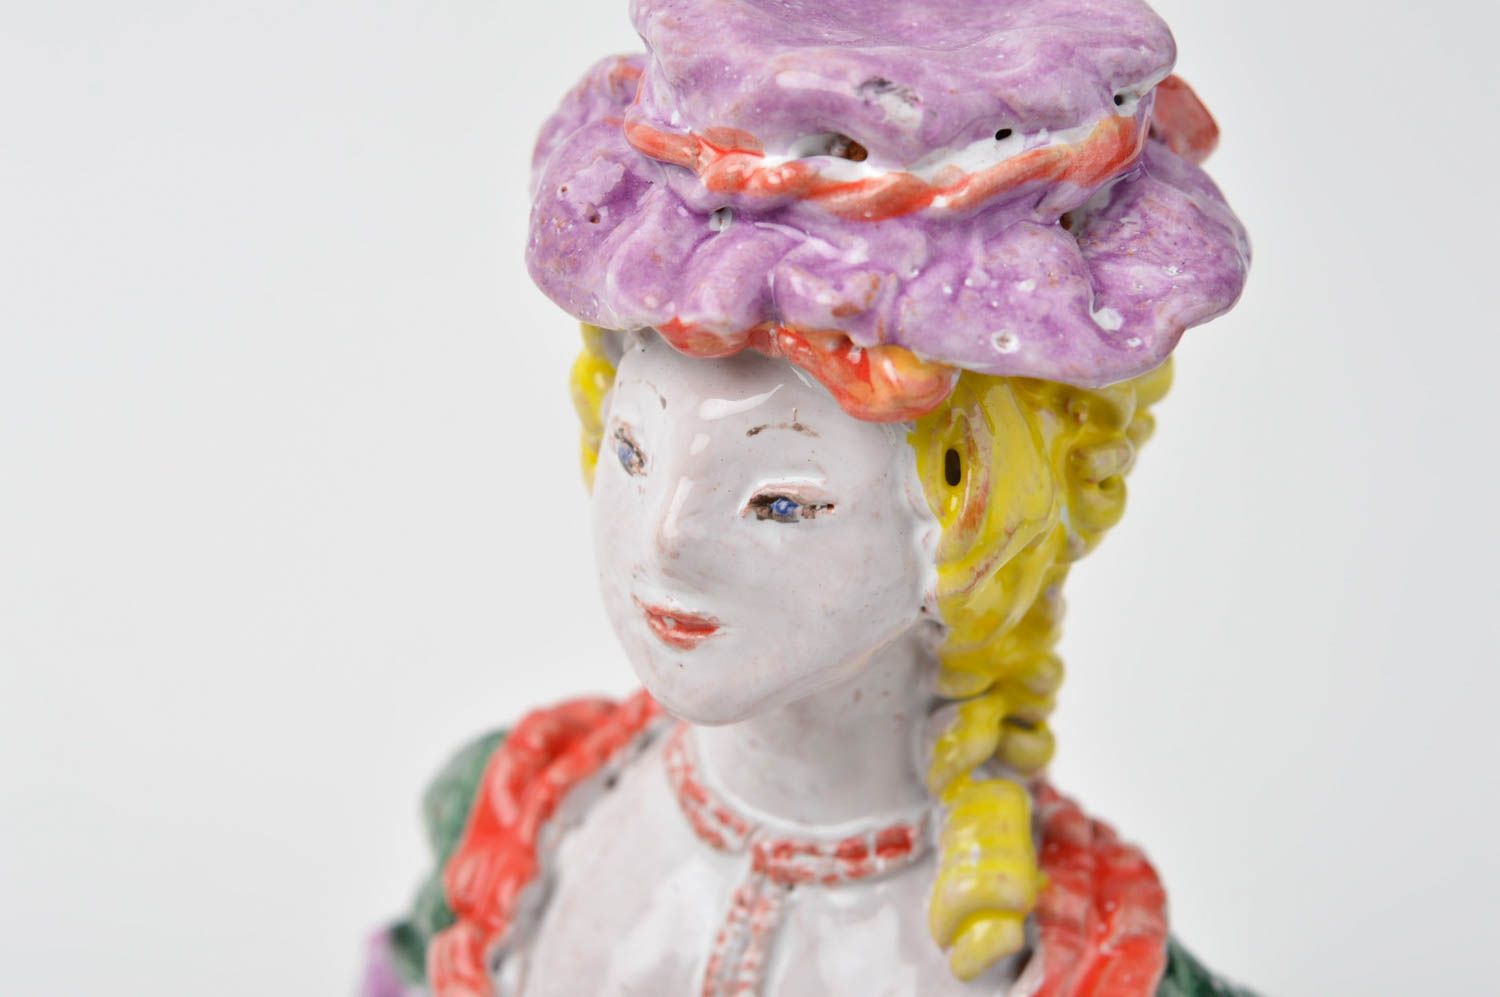 Figura hecha a mano con forma de señorita elemento decorativo souvenir original foto 1